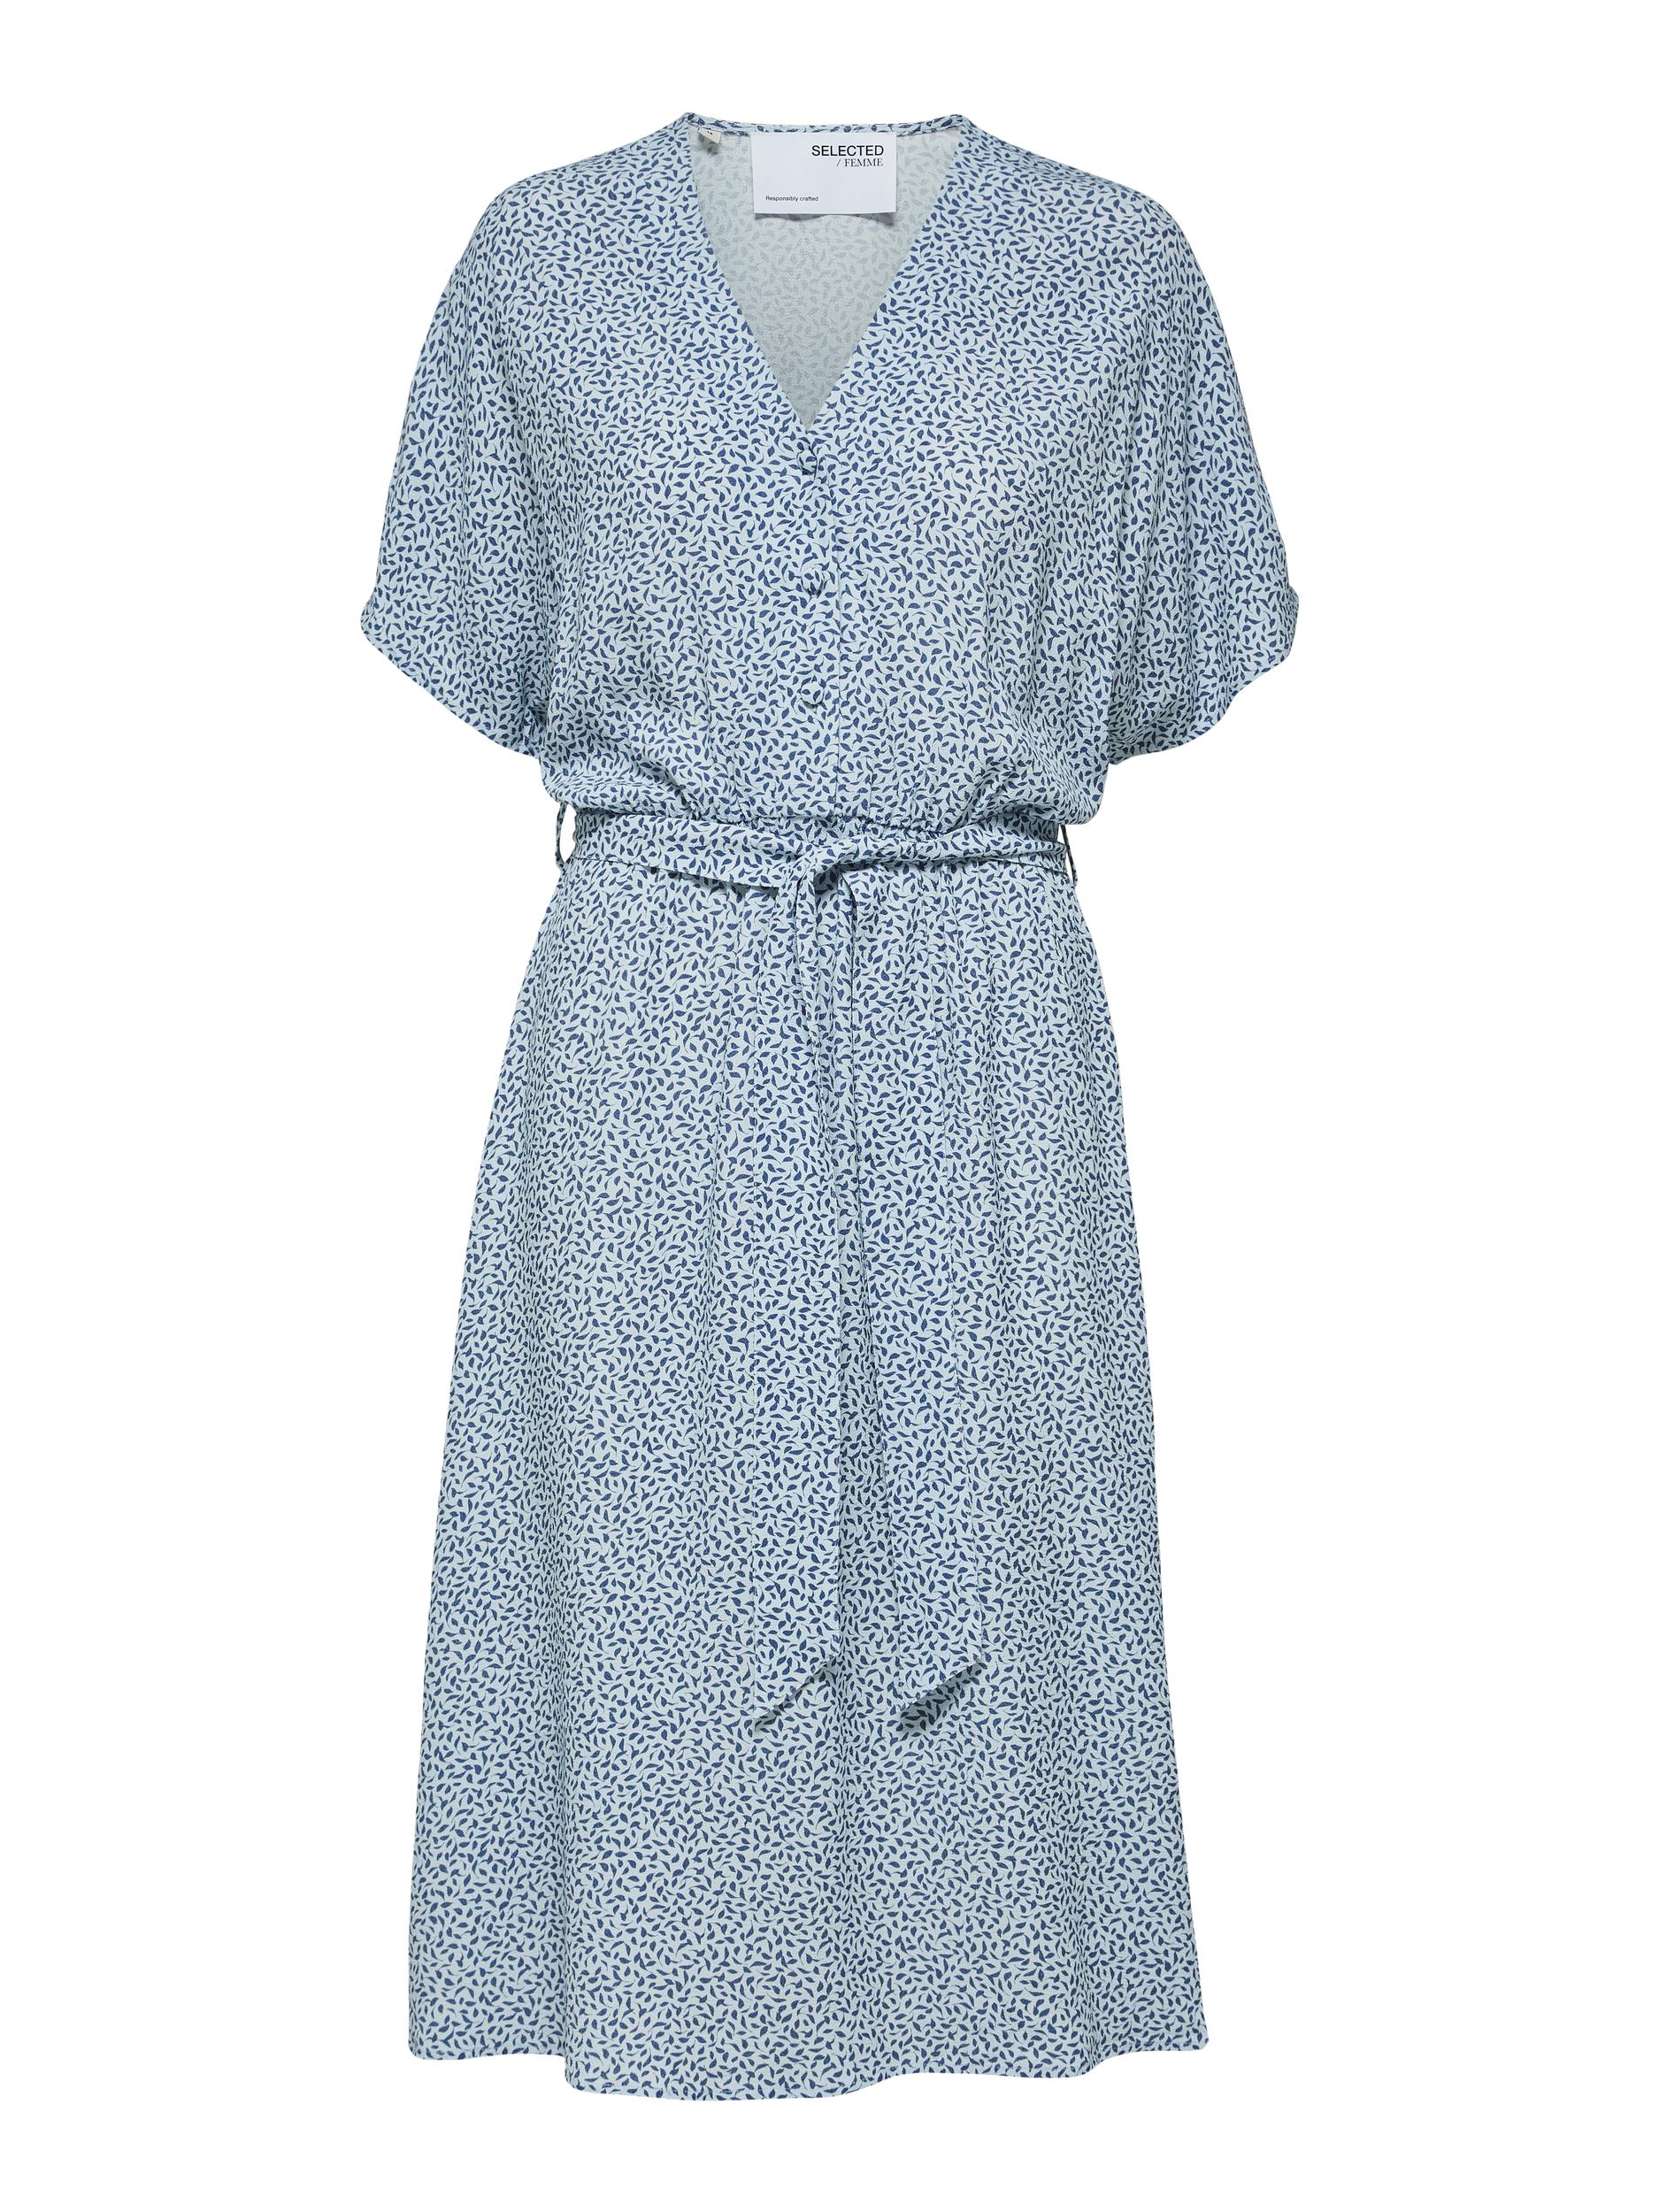 WmmXU Odzież SELECTED FEMME Sukienka koszulowa SLFENNA w kolorze Jasnoniebieski, Niebieskim 